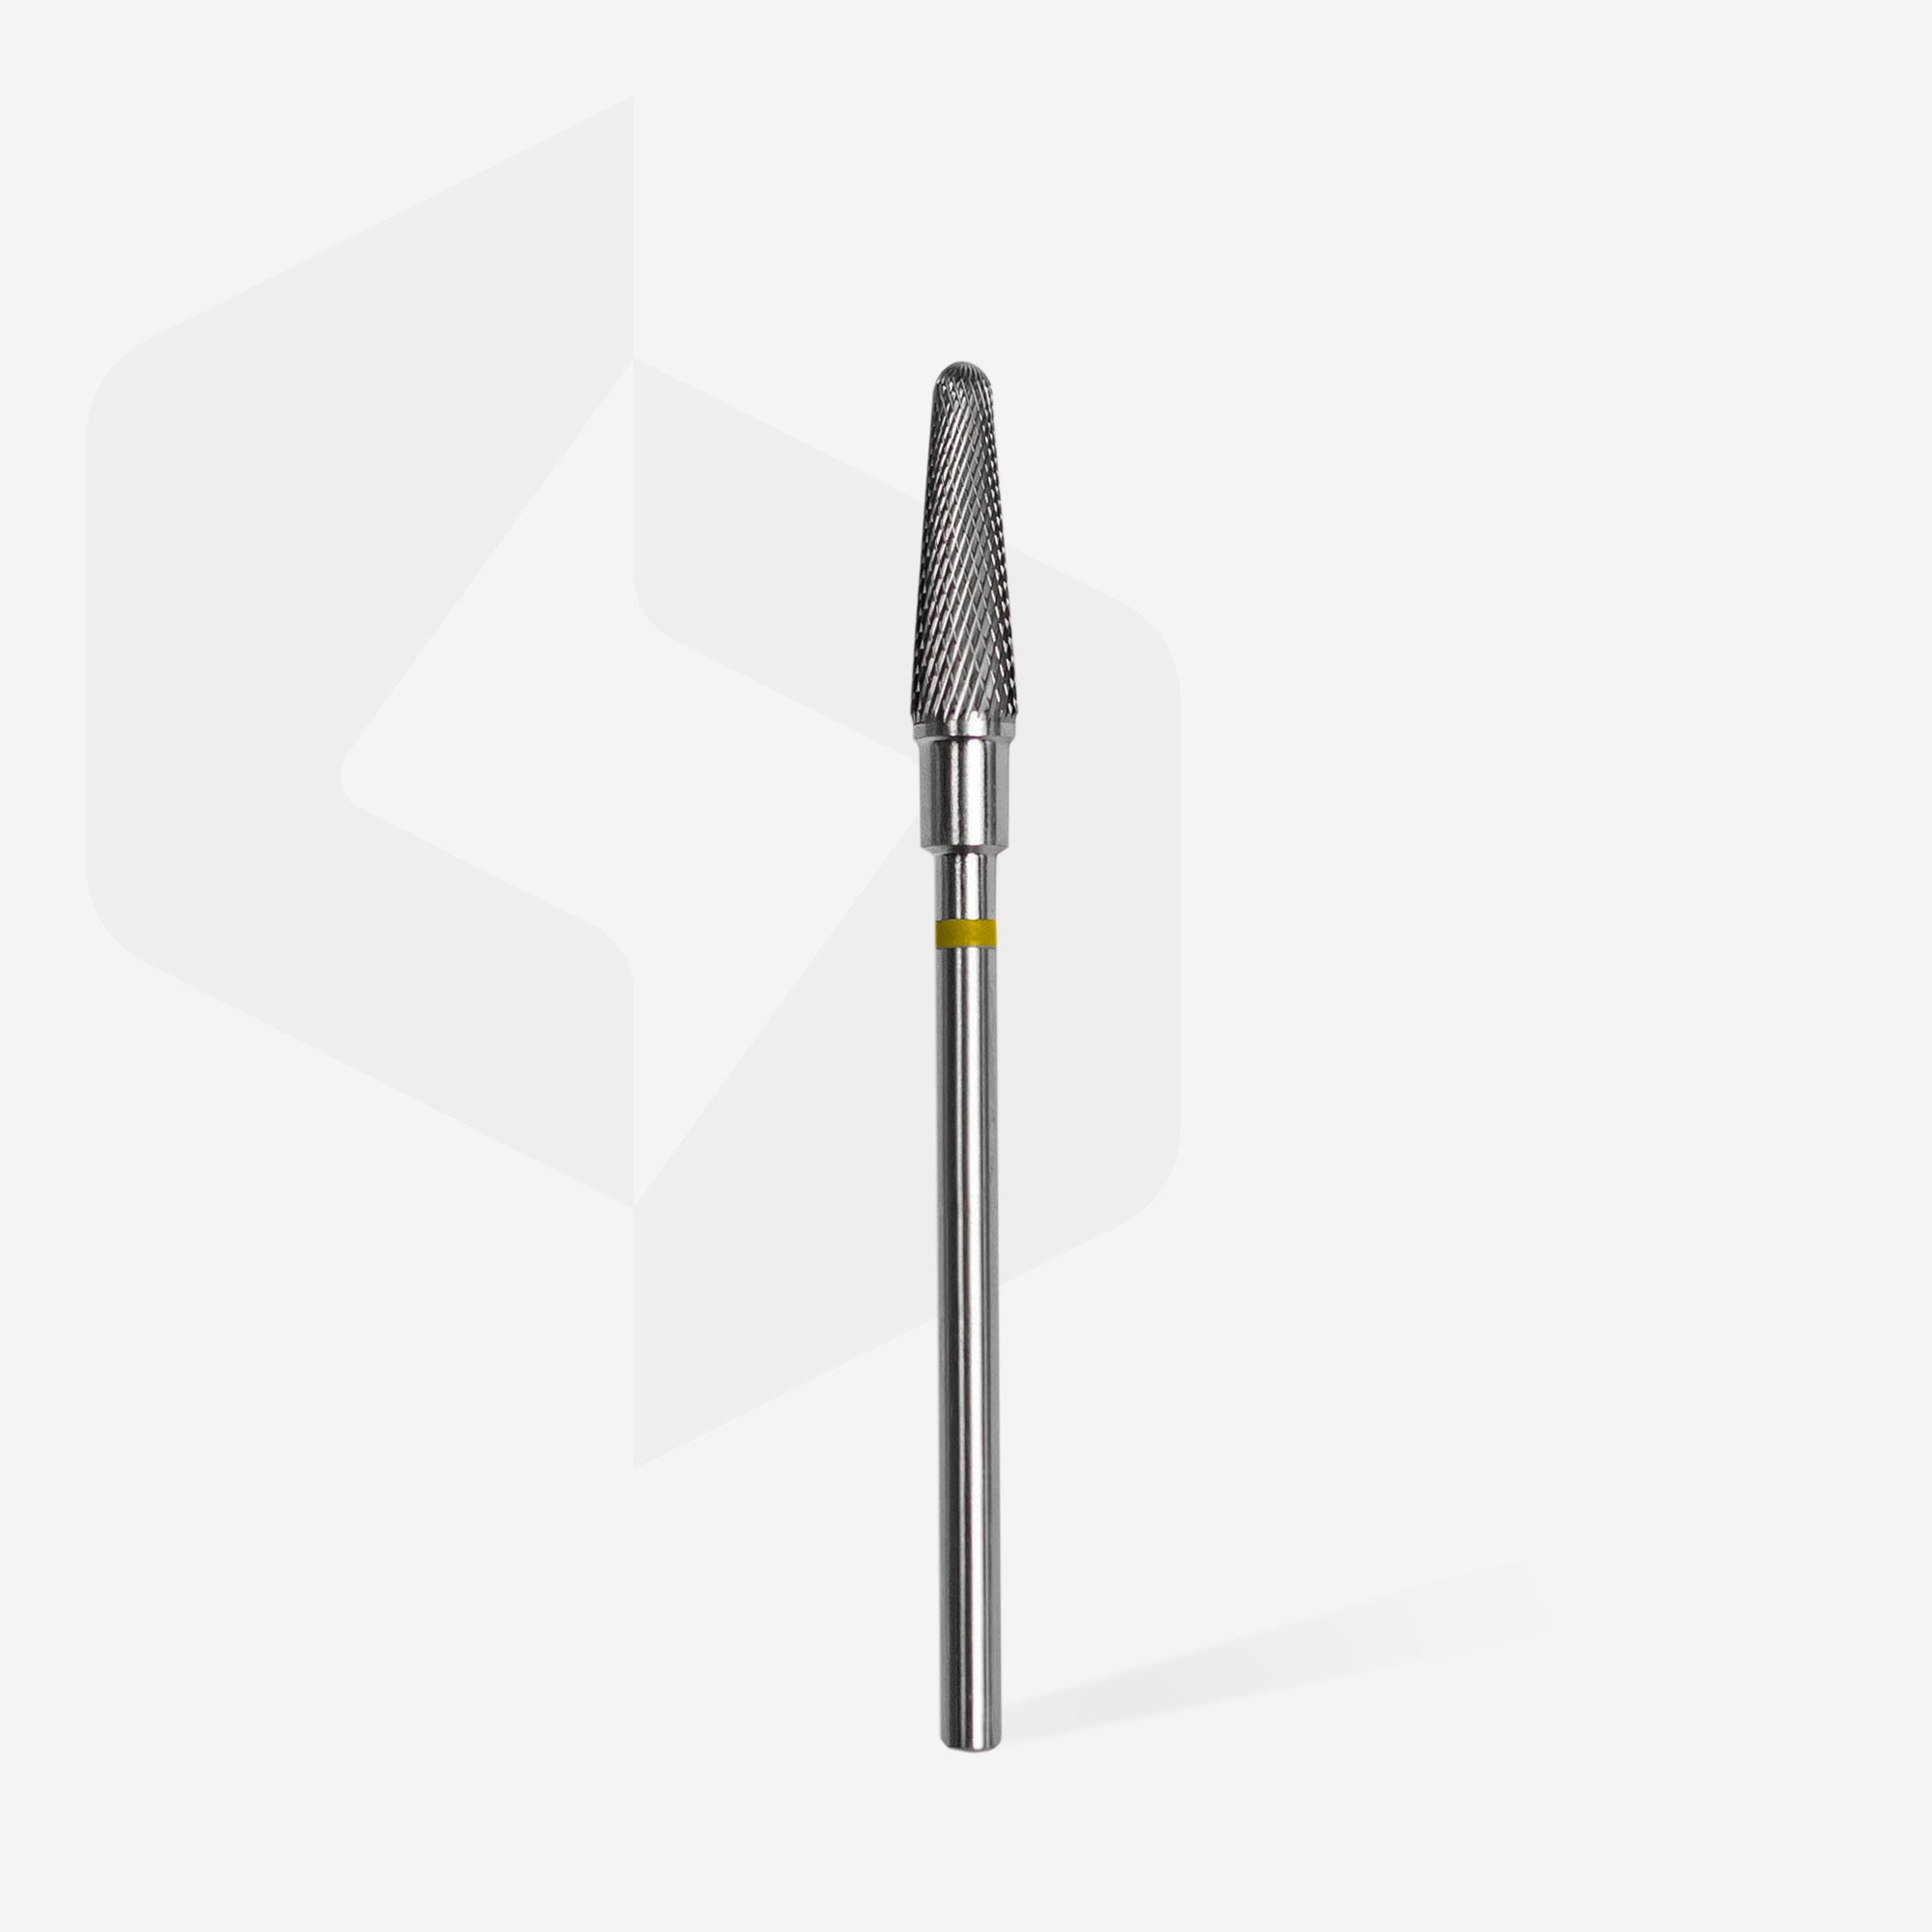 Carbide nail drill bit frustum yellow EXPERT head diameter 4 mm / working part 13 mm